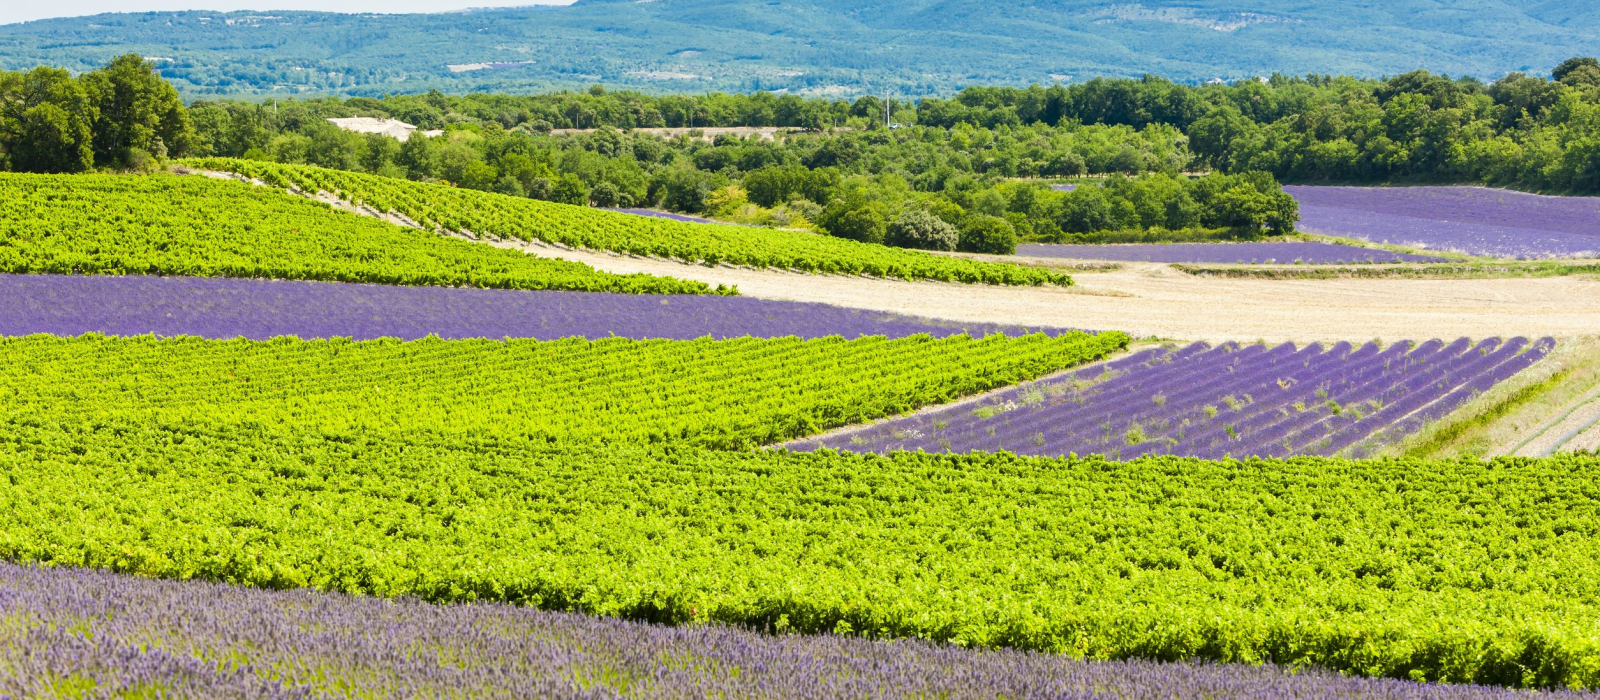 La vallée de la Drôme, du Vercors à la Provence